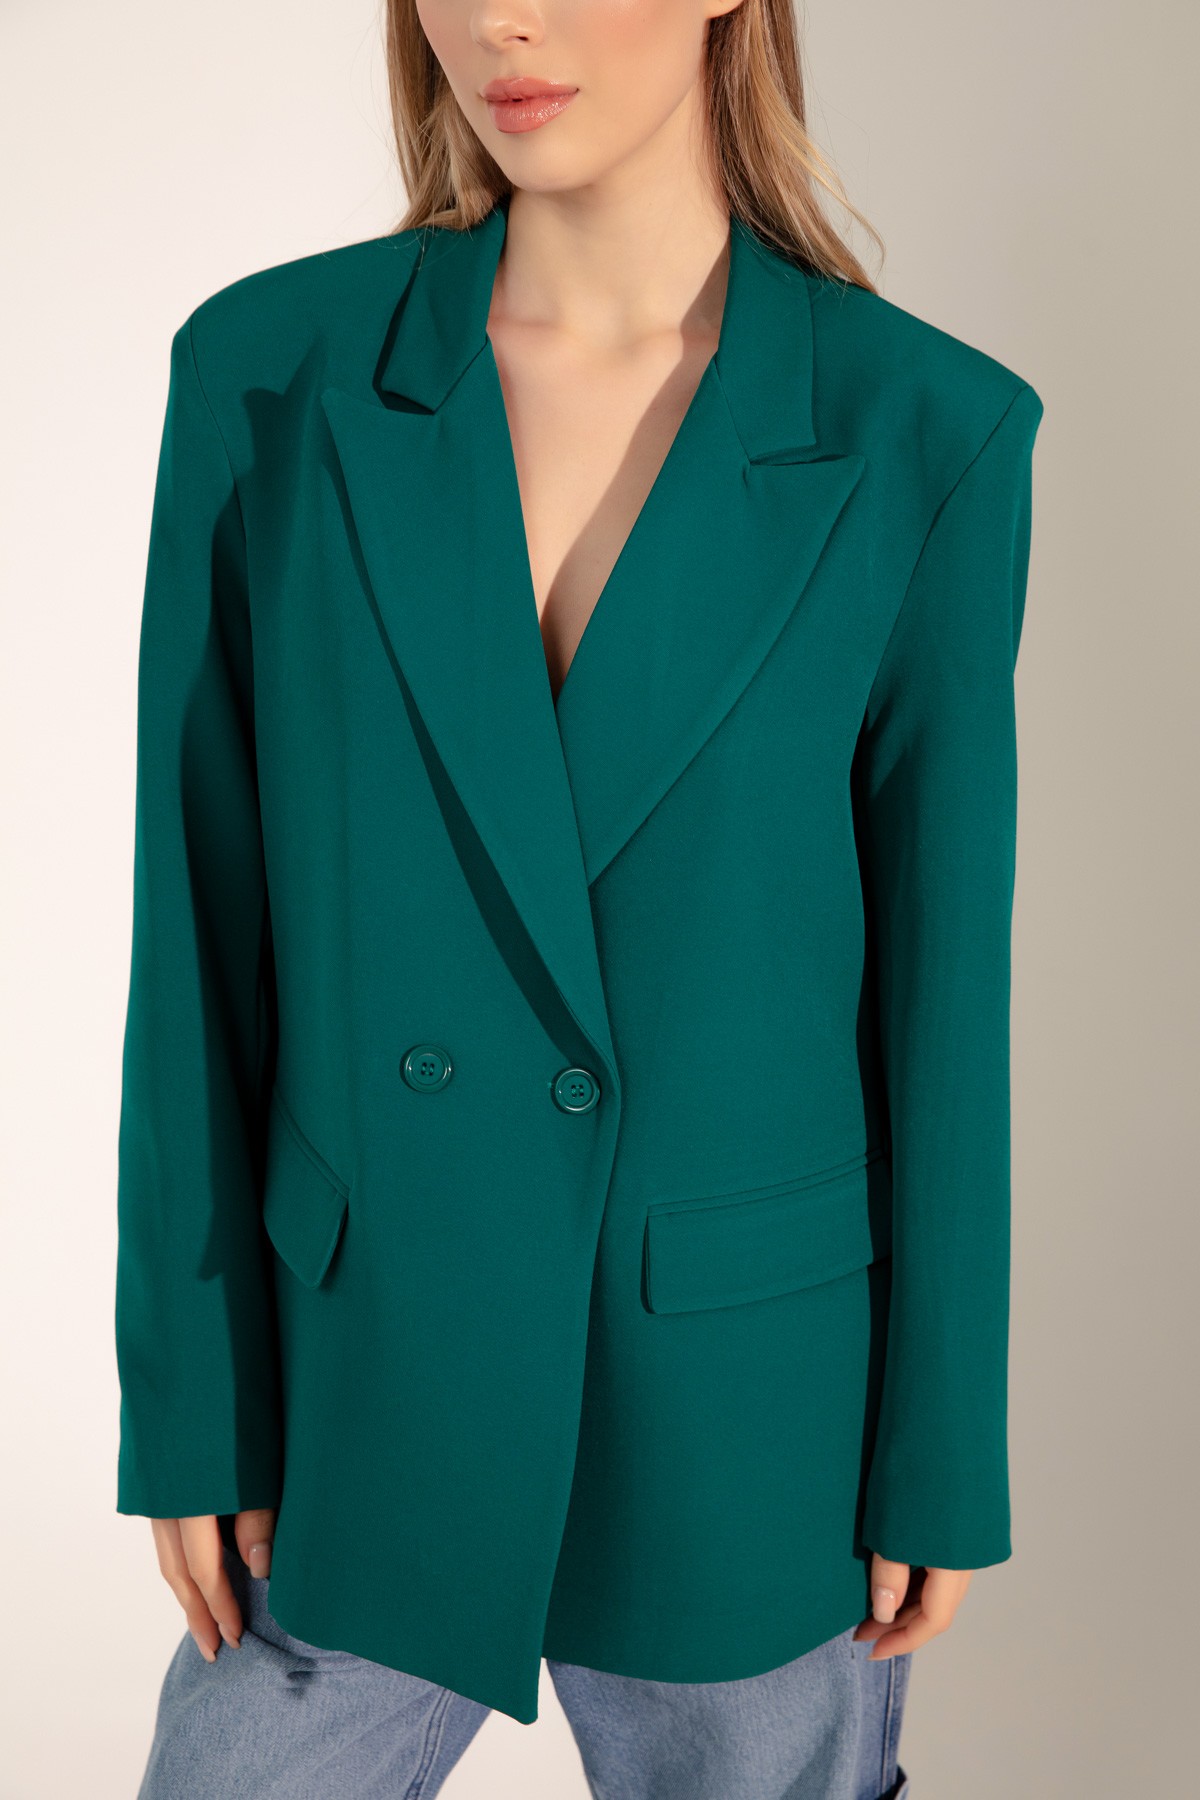 Kadın Oversize Düğmeli Blazer Ceket - Yeşil